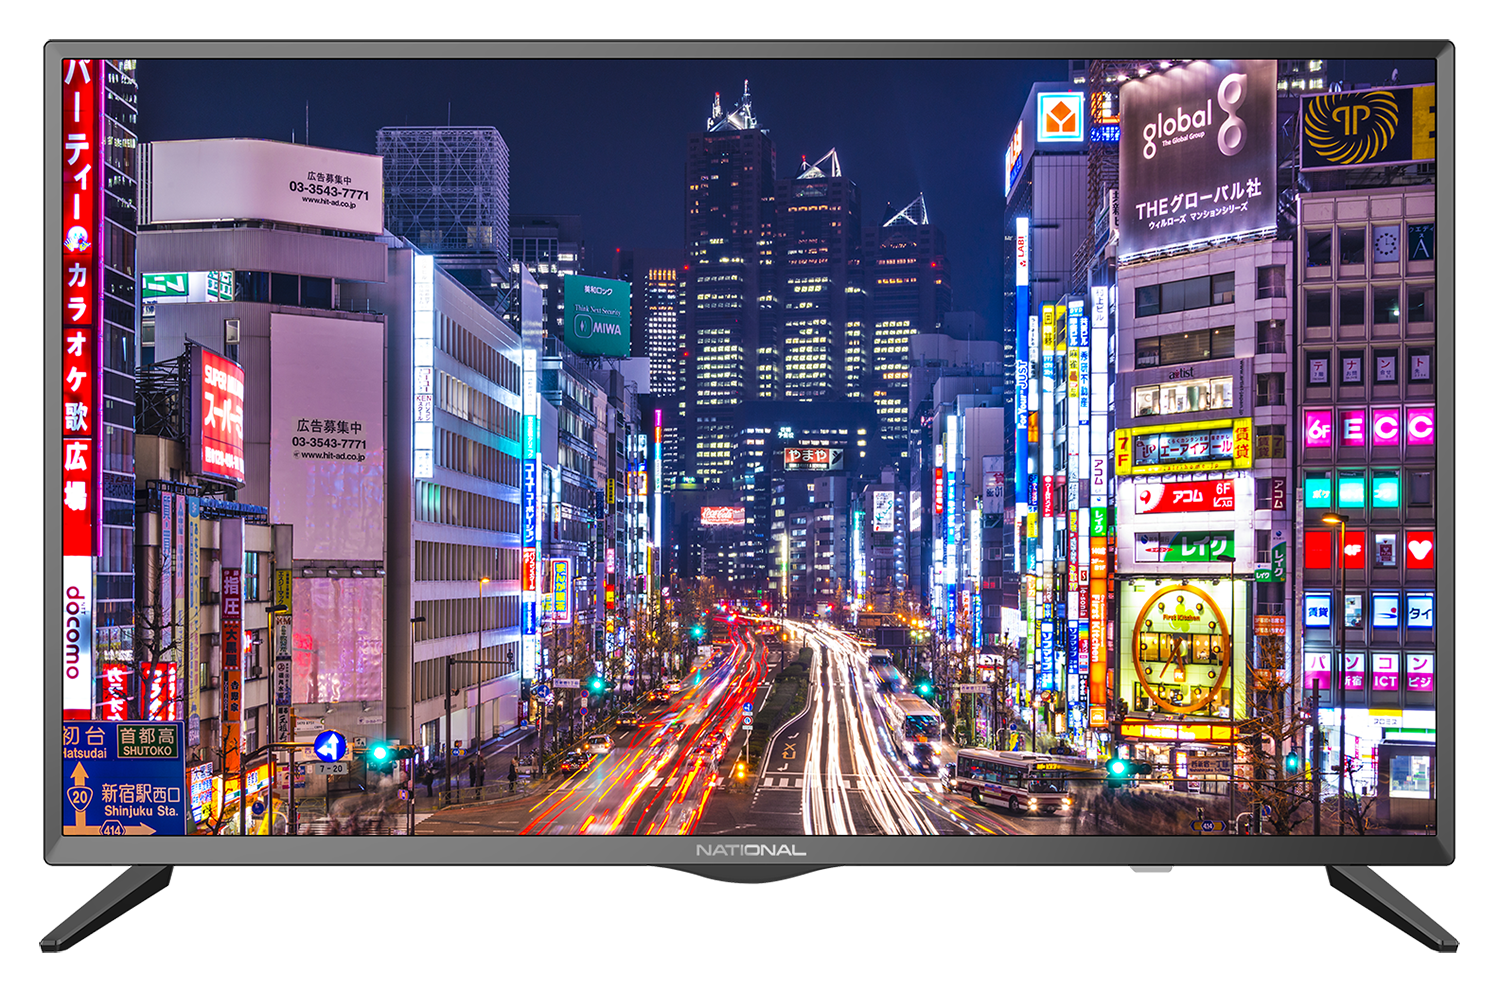 Картинка Smart телевизор NATIONAL NX-32THS100 по разумной цене купить в интернет магазине mall.su